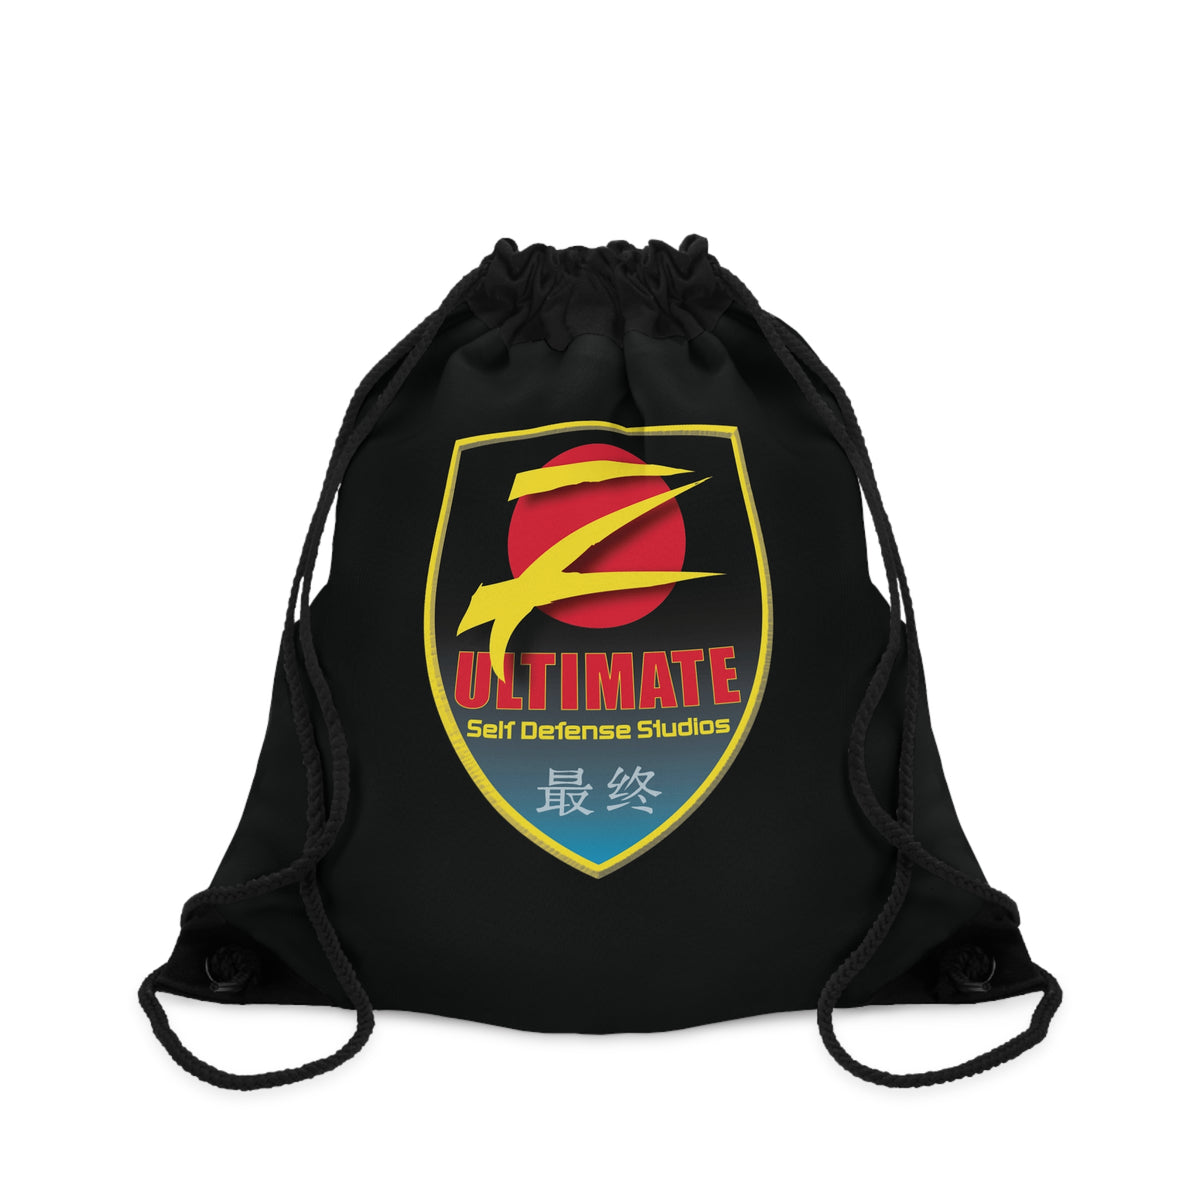 Z-Ultimate Shield Logo Black Drawstring Bag